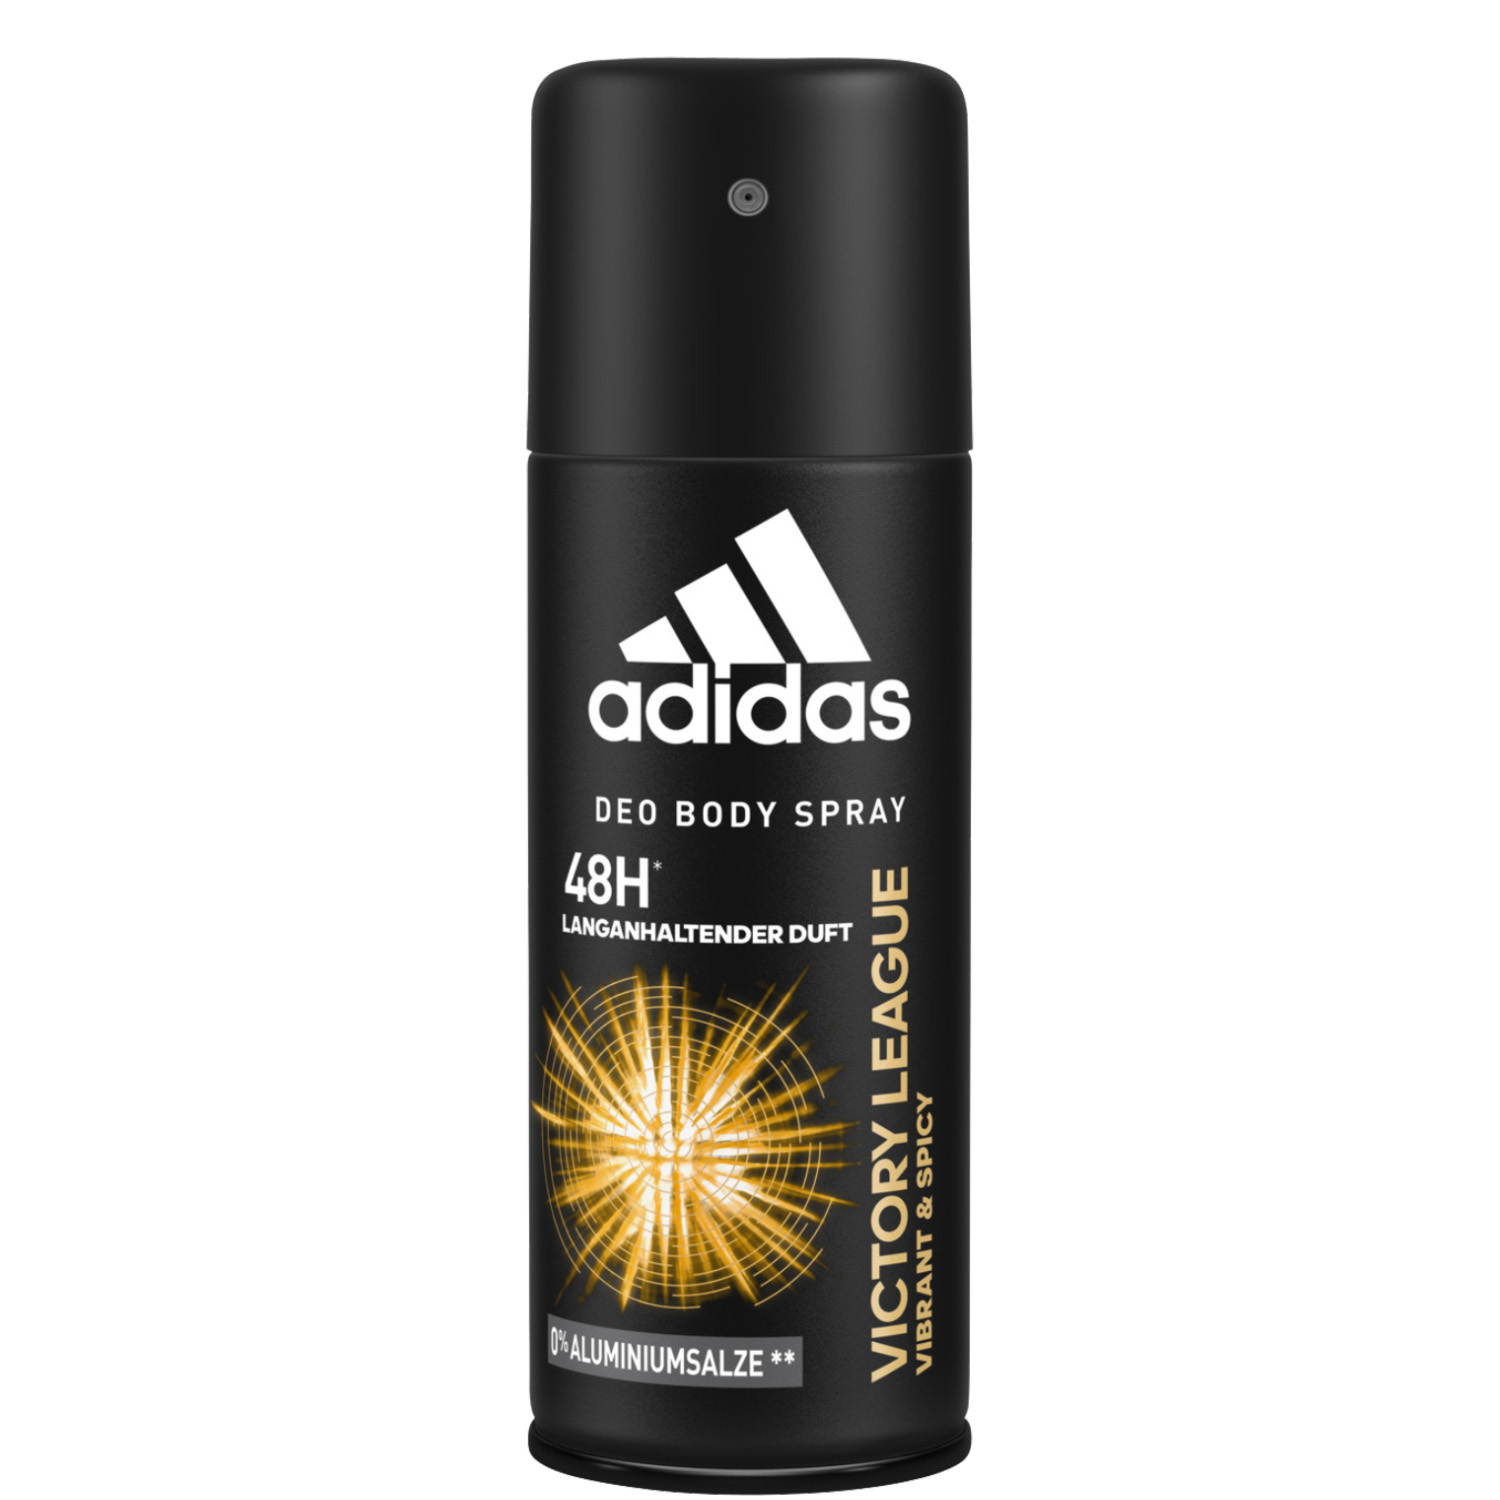 Adidas Victory League 48H Deodorant Body Spray 150ml